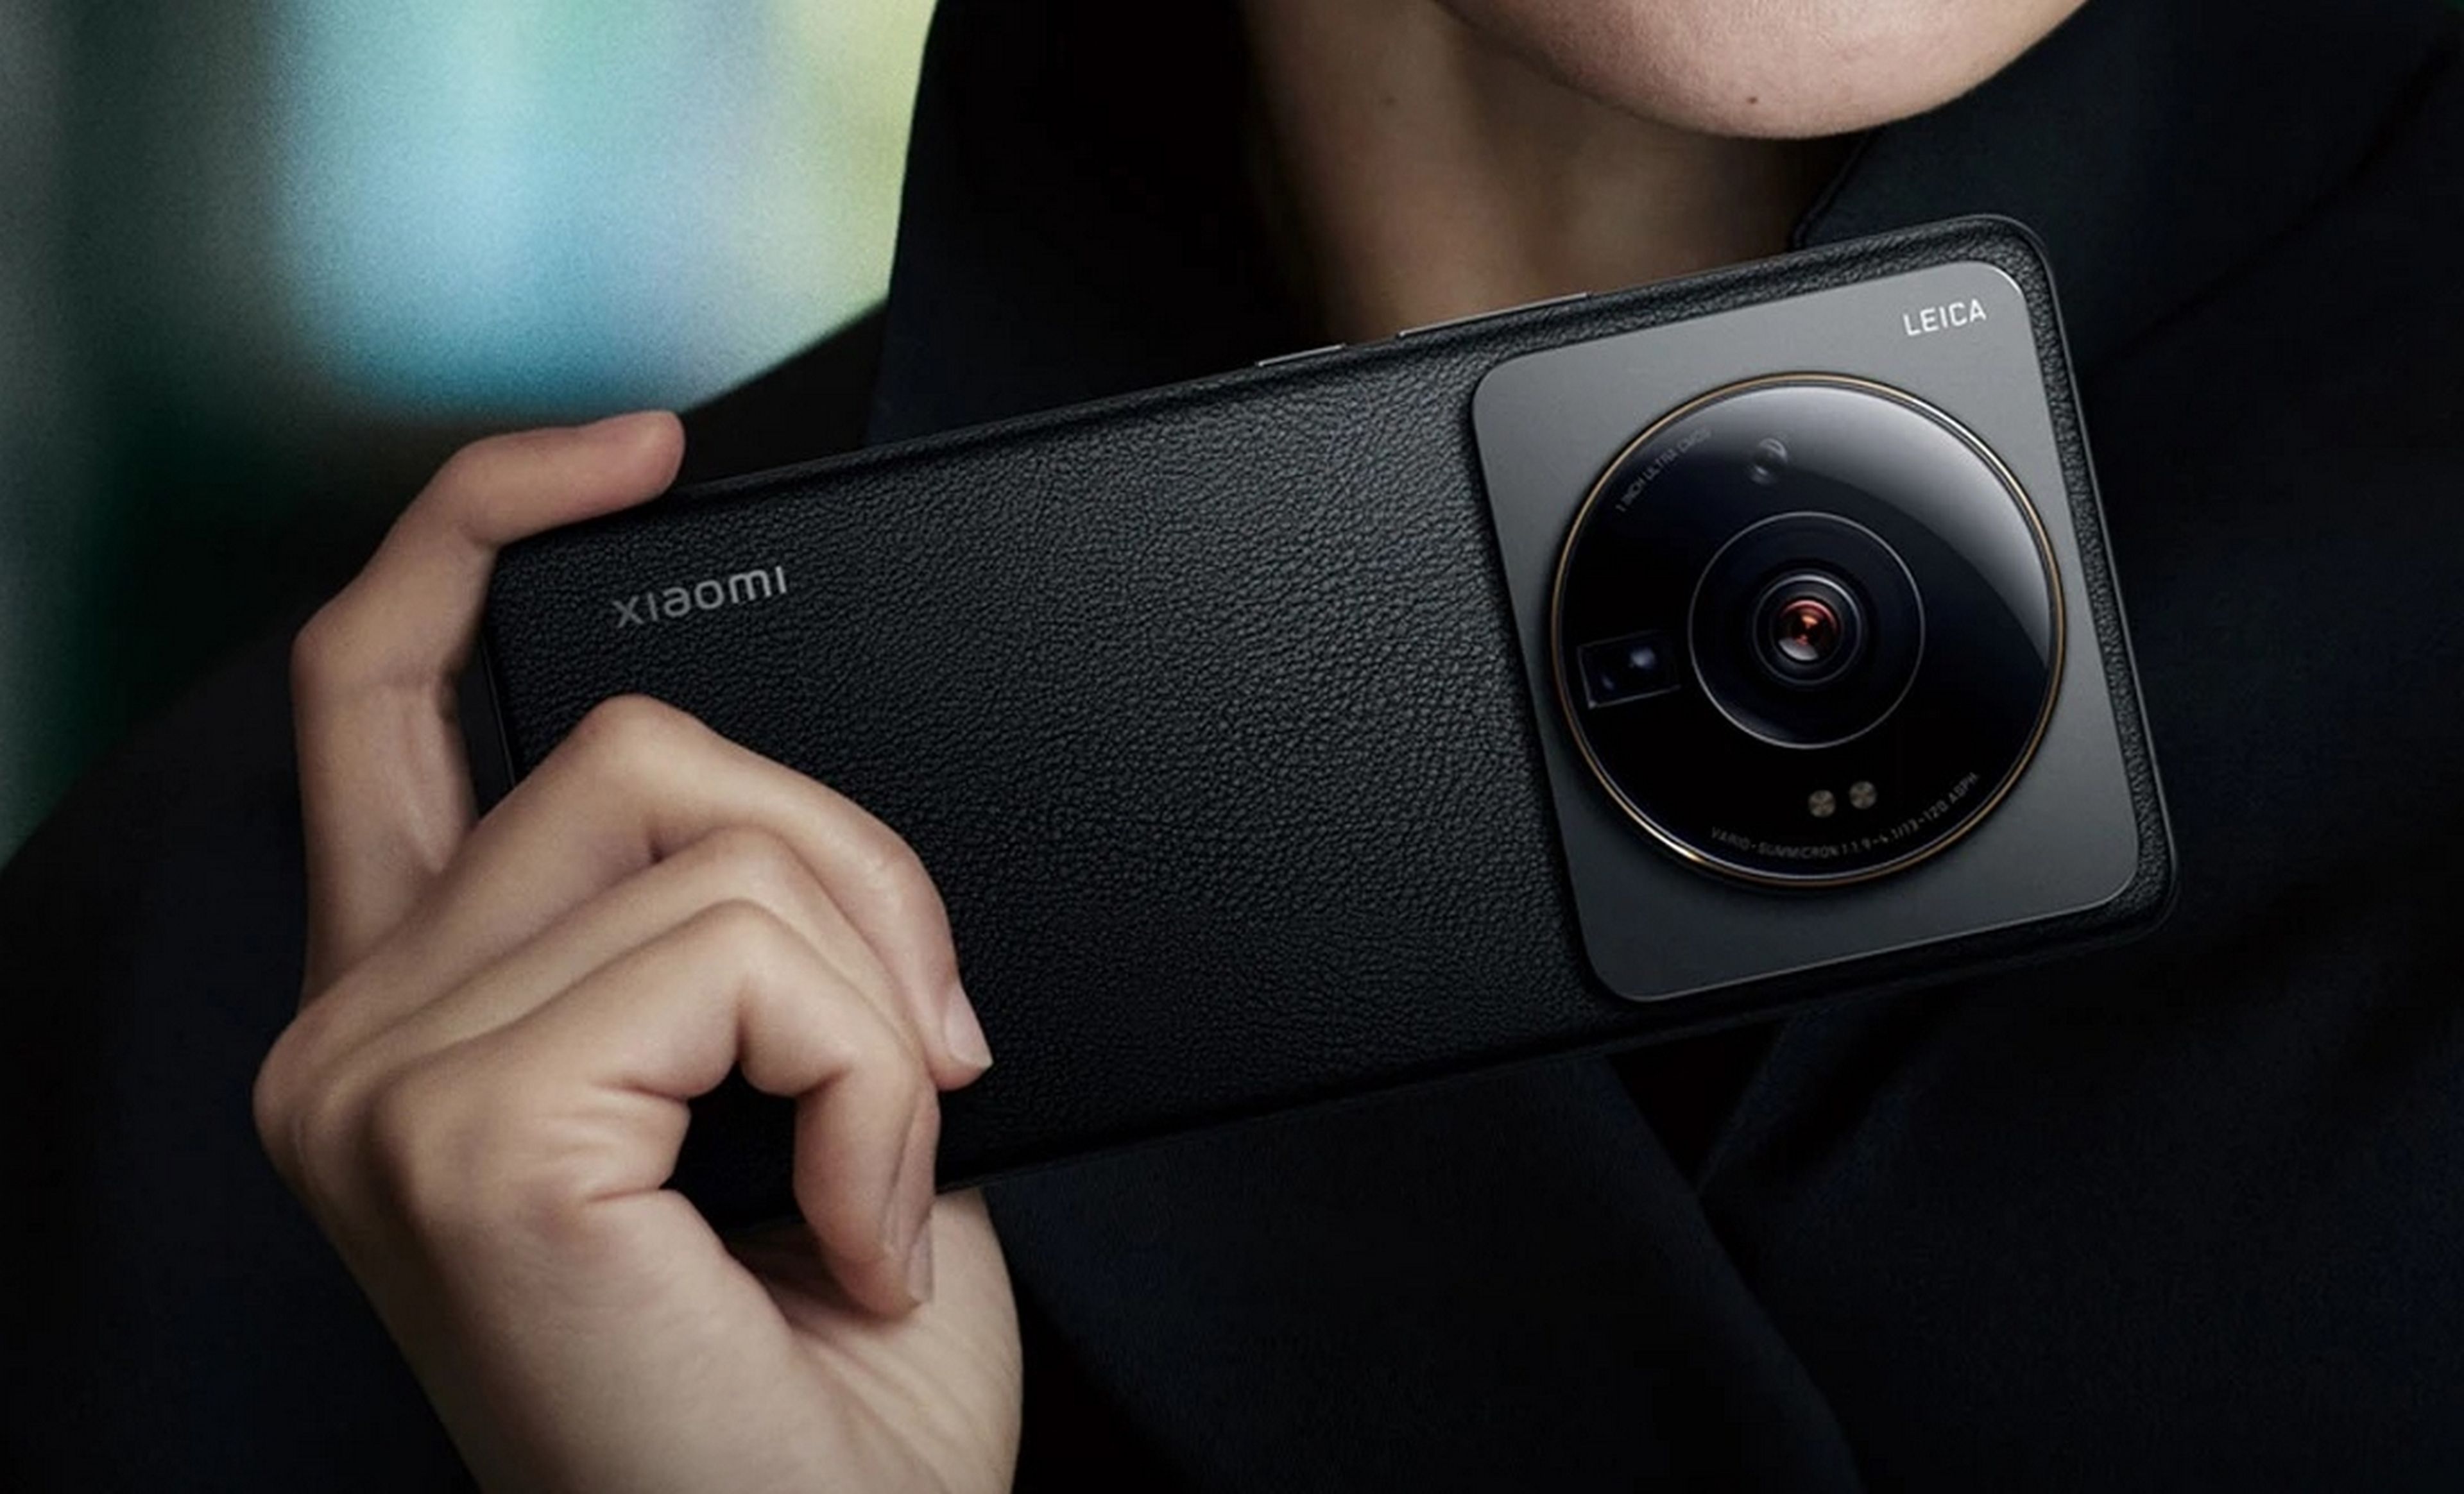 Xiaomi 12S Ultra: Un teléfono de gama alta con una cámara que